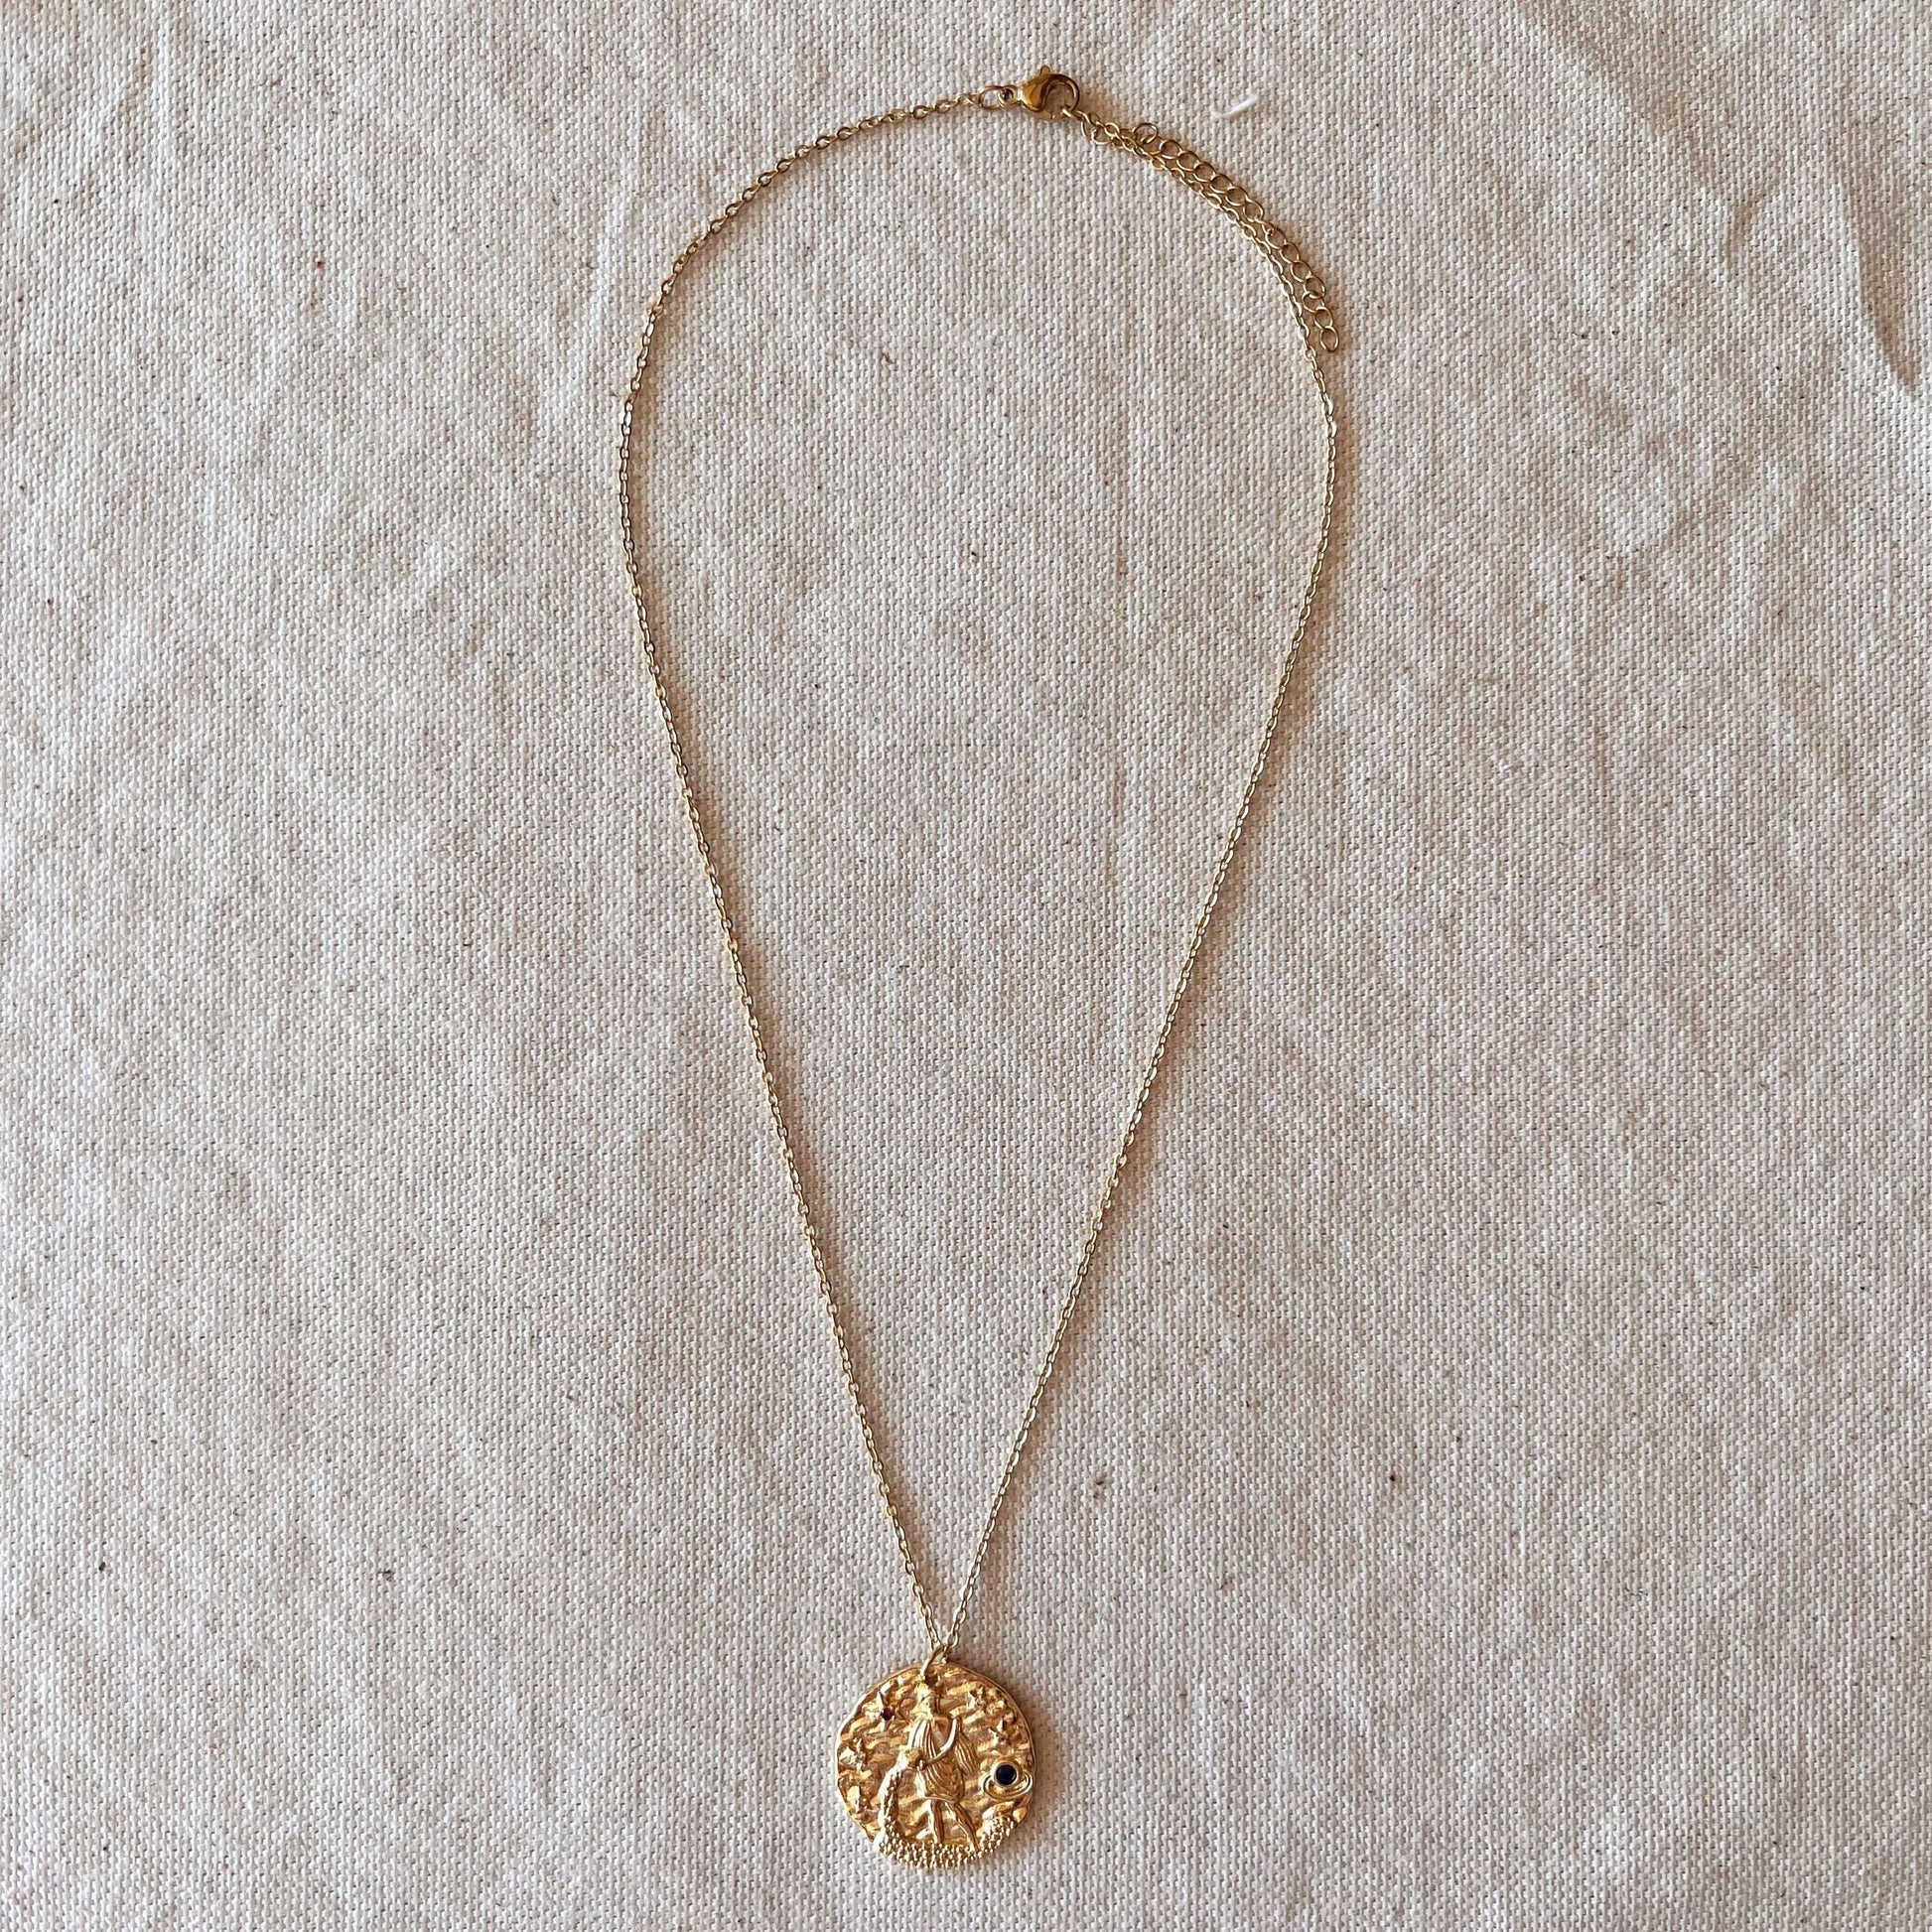 GoldFi Aquarius Necklace